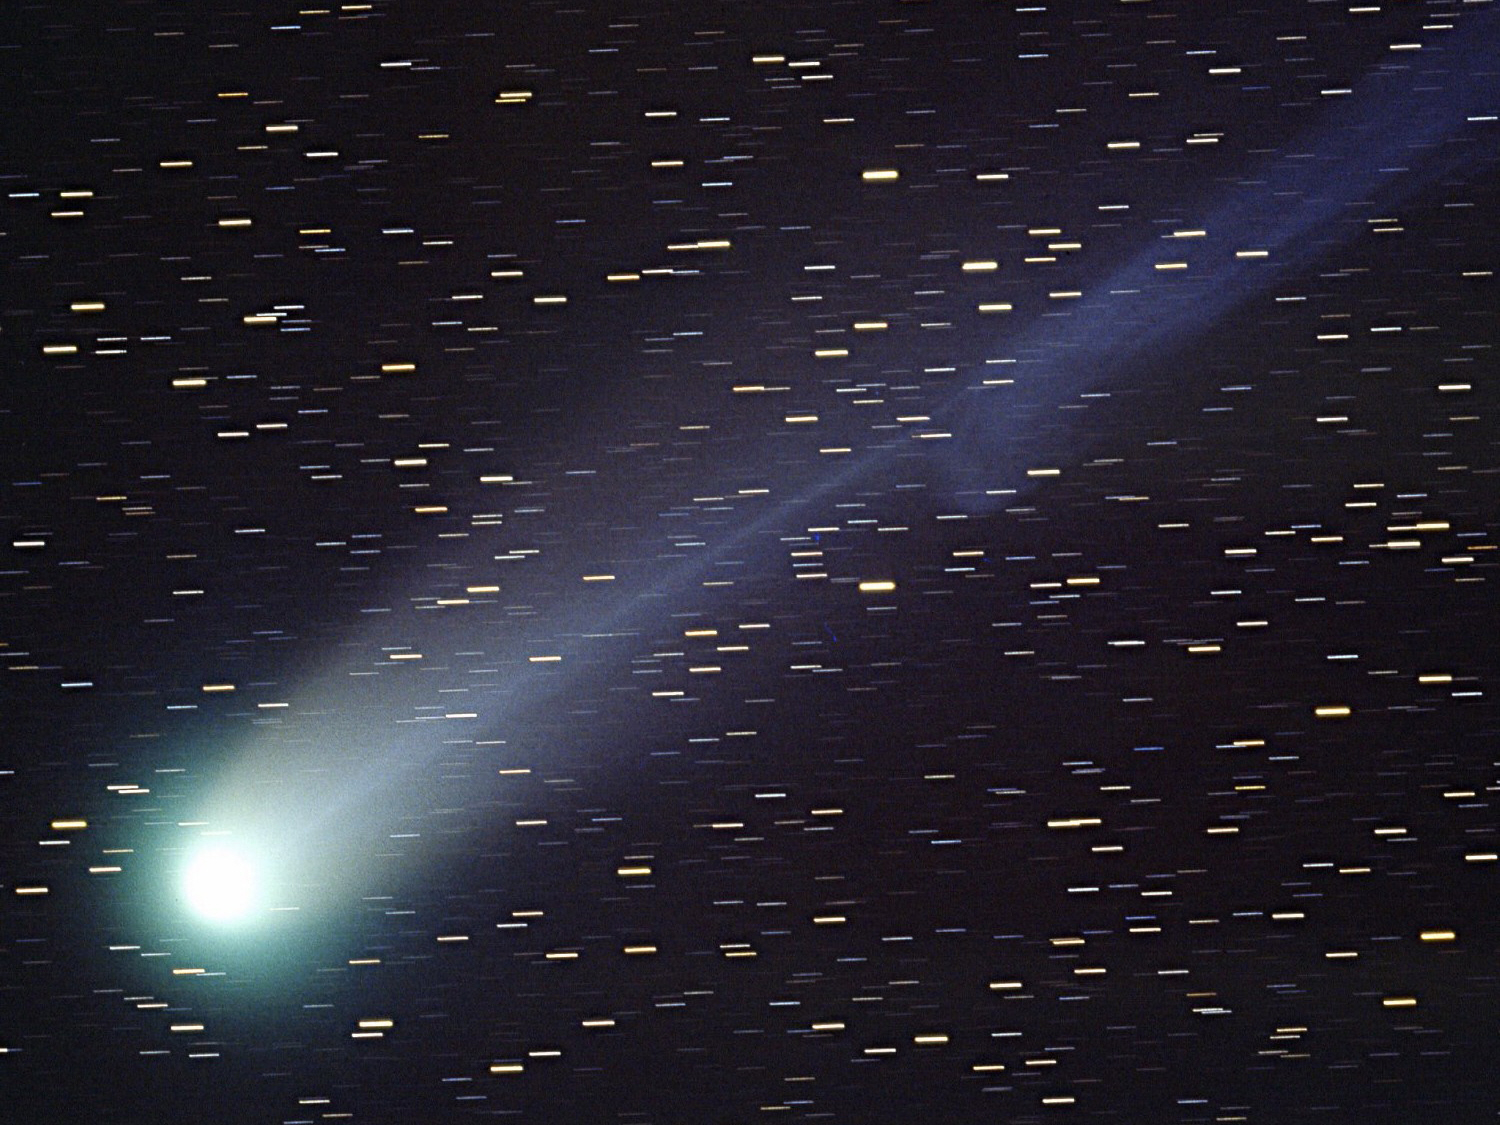 A Hyakutake üstökös 1996-ban, egy linzi obszervatóriumból készült felvételen